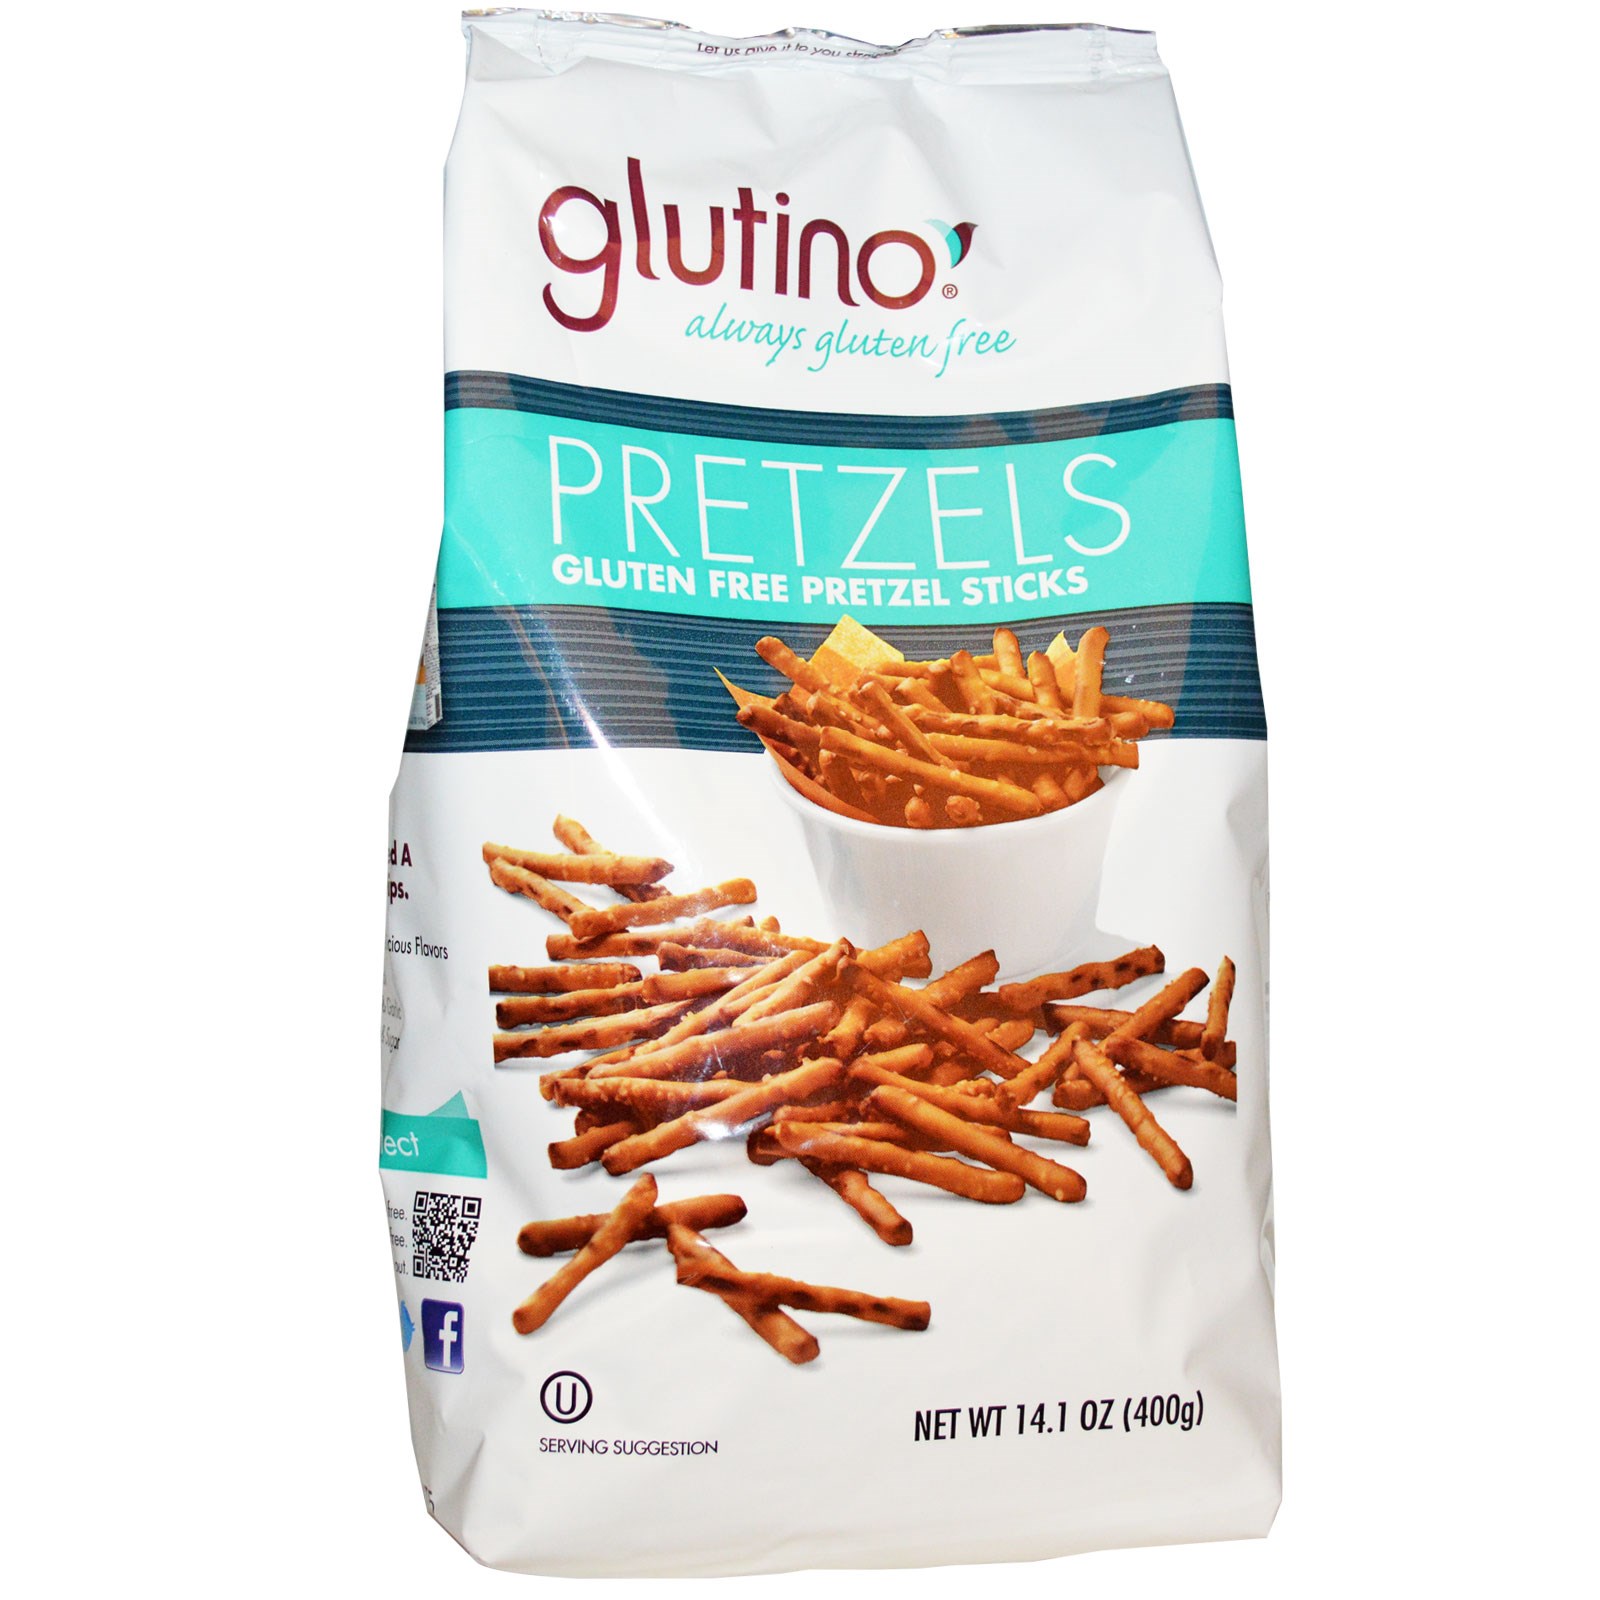 glutino-gluten-free-pretzels-only-2-99-at-publix-addictedtosaving